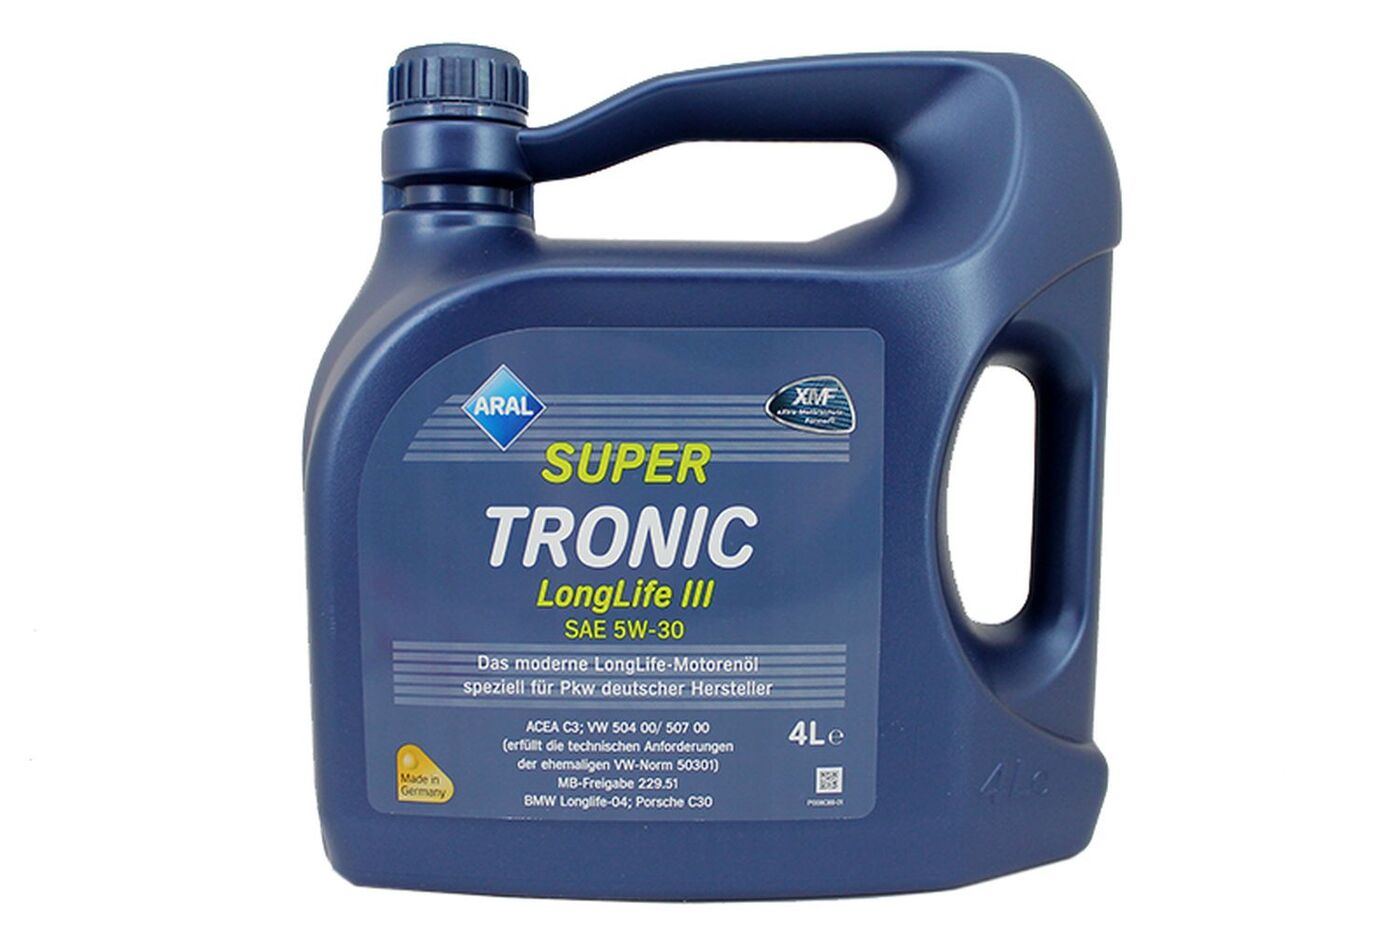 Масло моторное aral super tronic 0w-40 (4 литрa) synt. (до - 54 с) | каталог | автонаходка